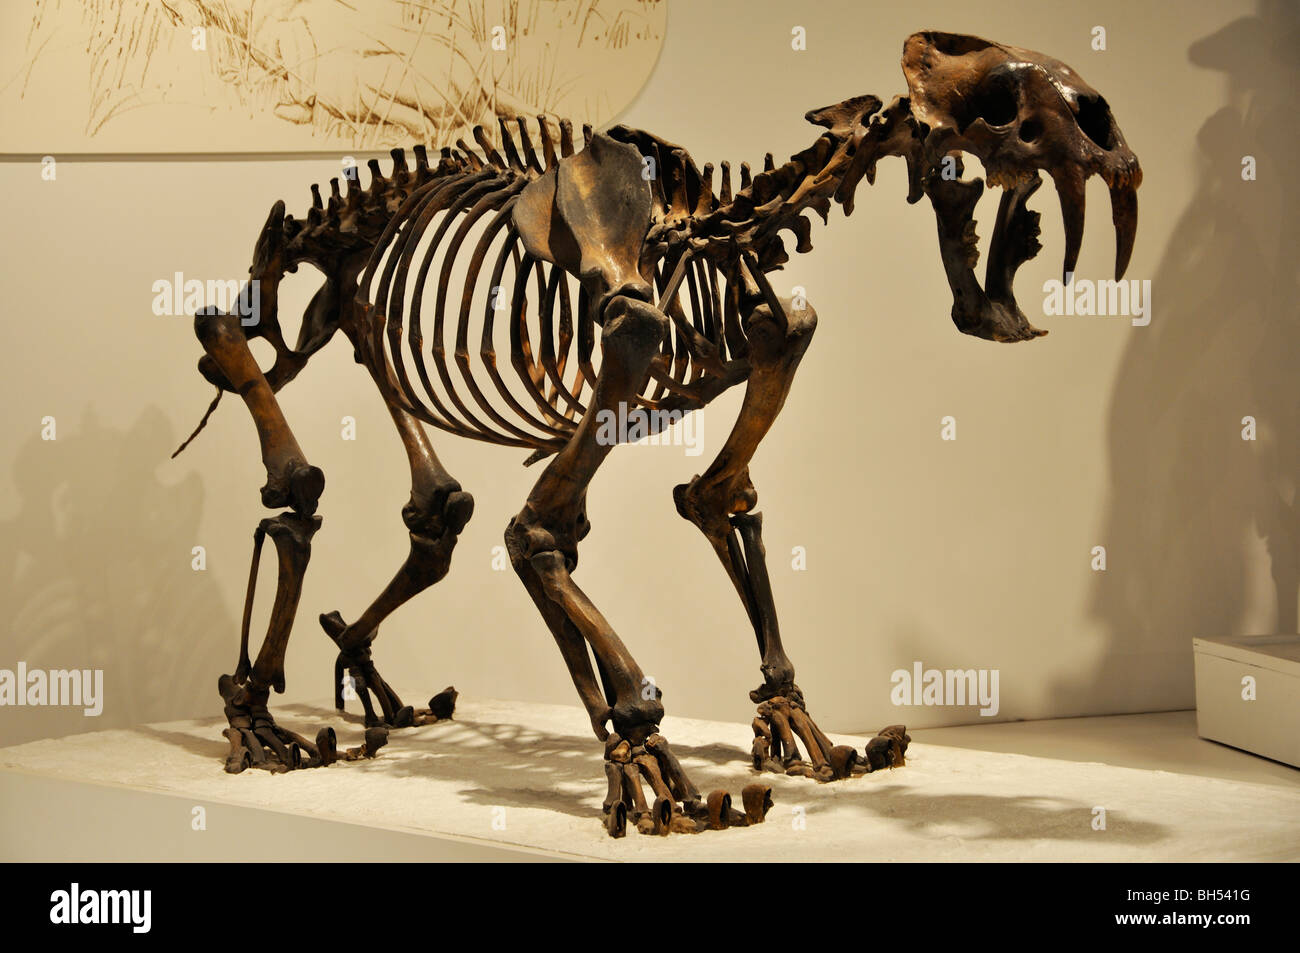 Chat à dents de sabre (smilodon fatalis) Squelette à Panhandle-Plains Historical Museum, Amarillo, Texas Banque D'Images